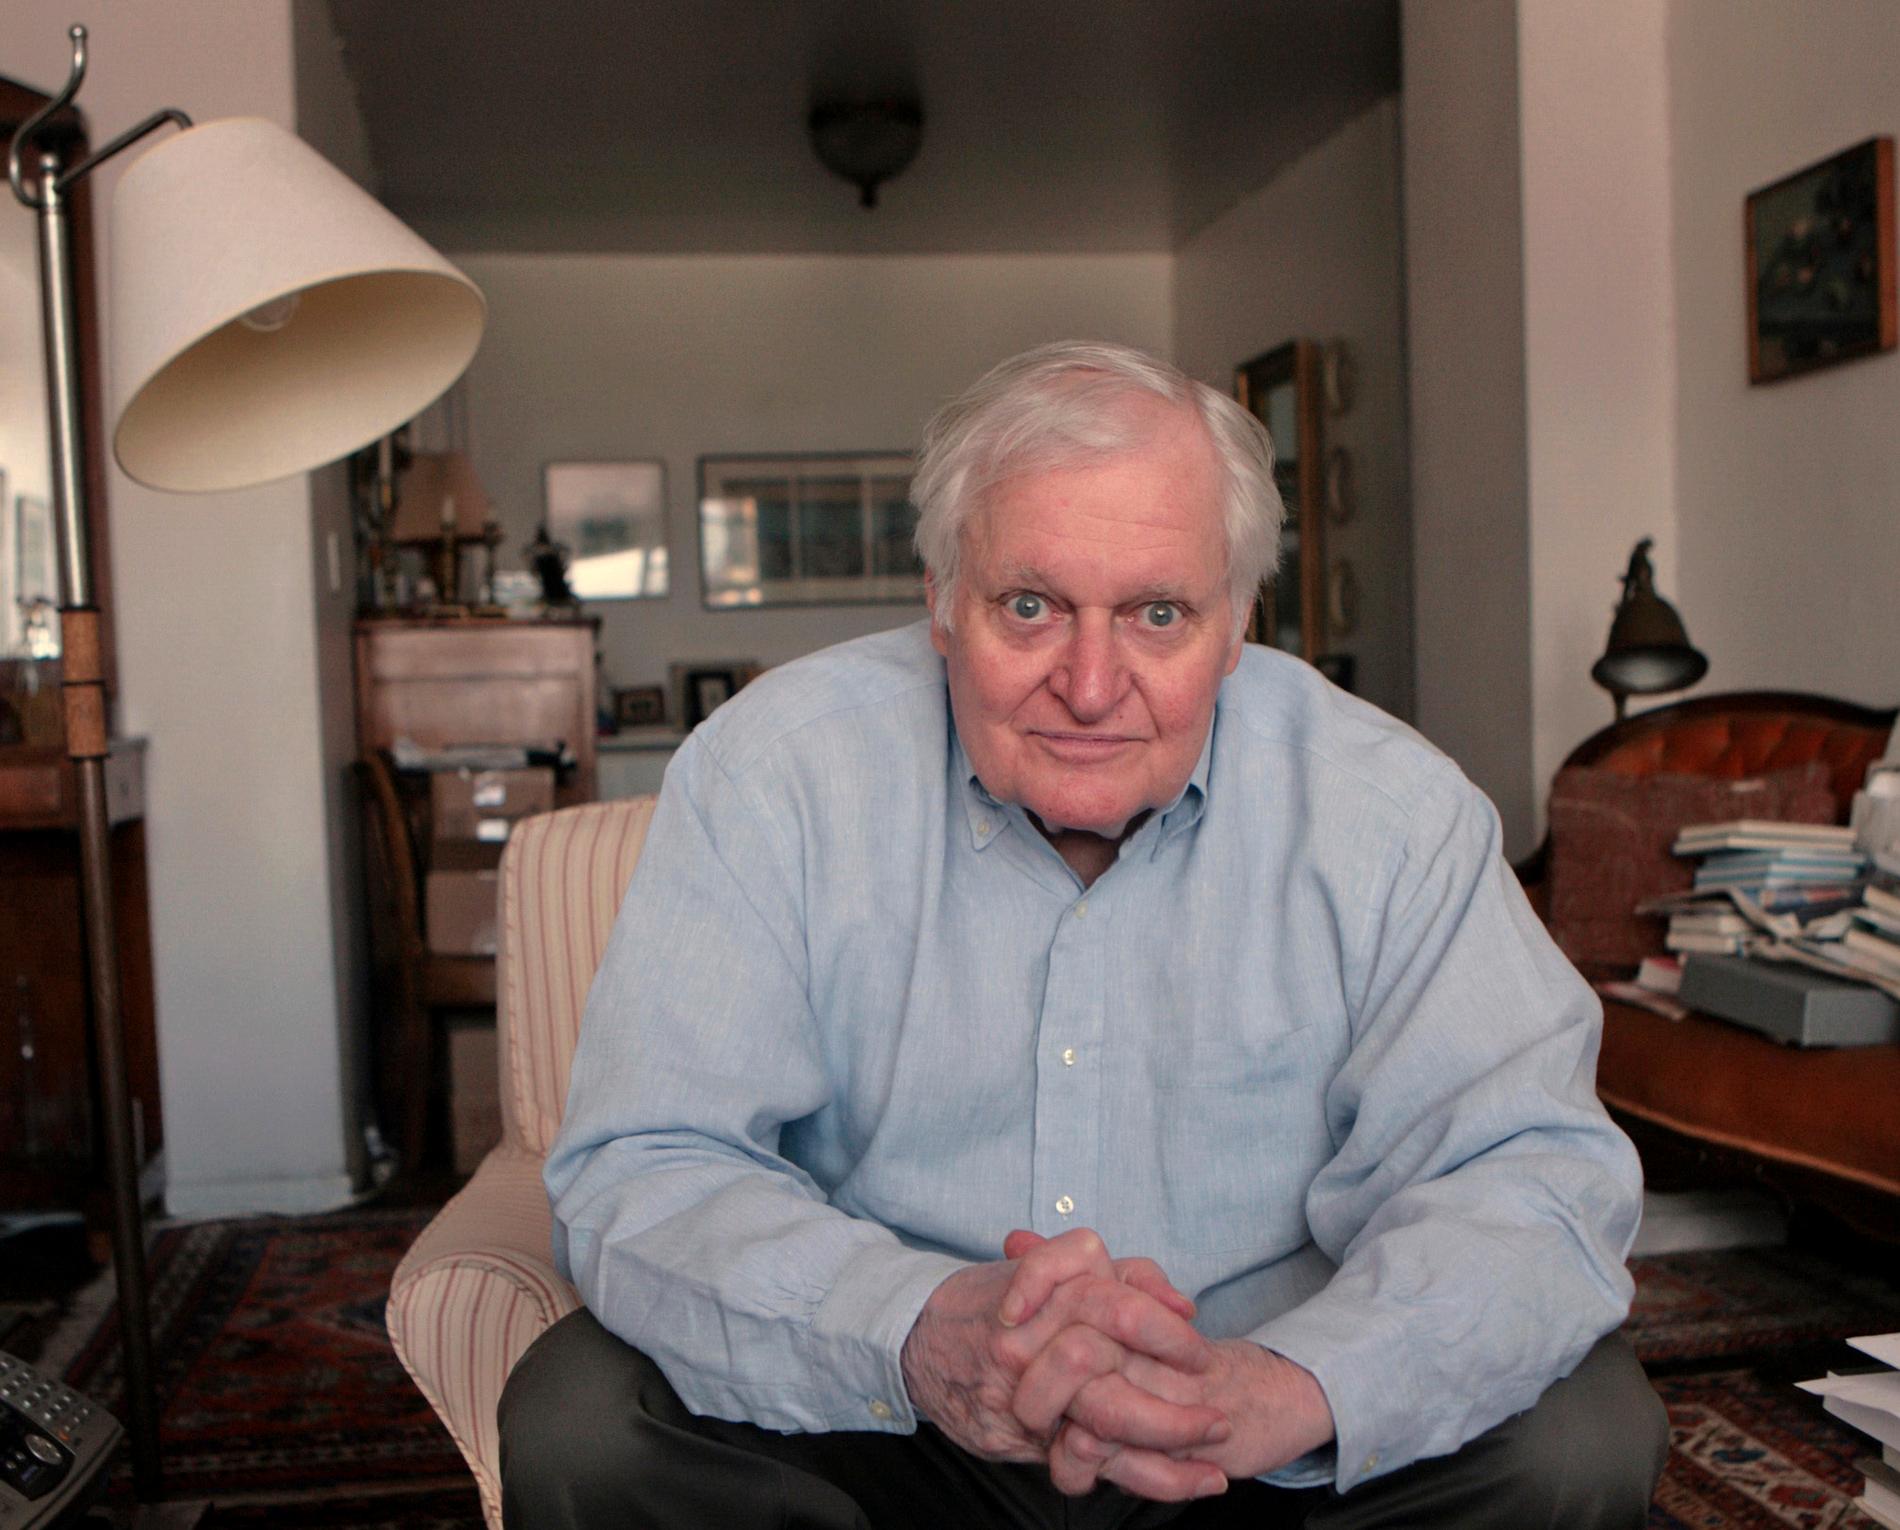   John Ashbery intervjuas i sin lägenhet i New York, i september 2008. Han dog av naturliga orsaker, enligt maken David Kermani. Ashbery blev 90 år.